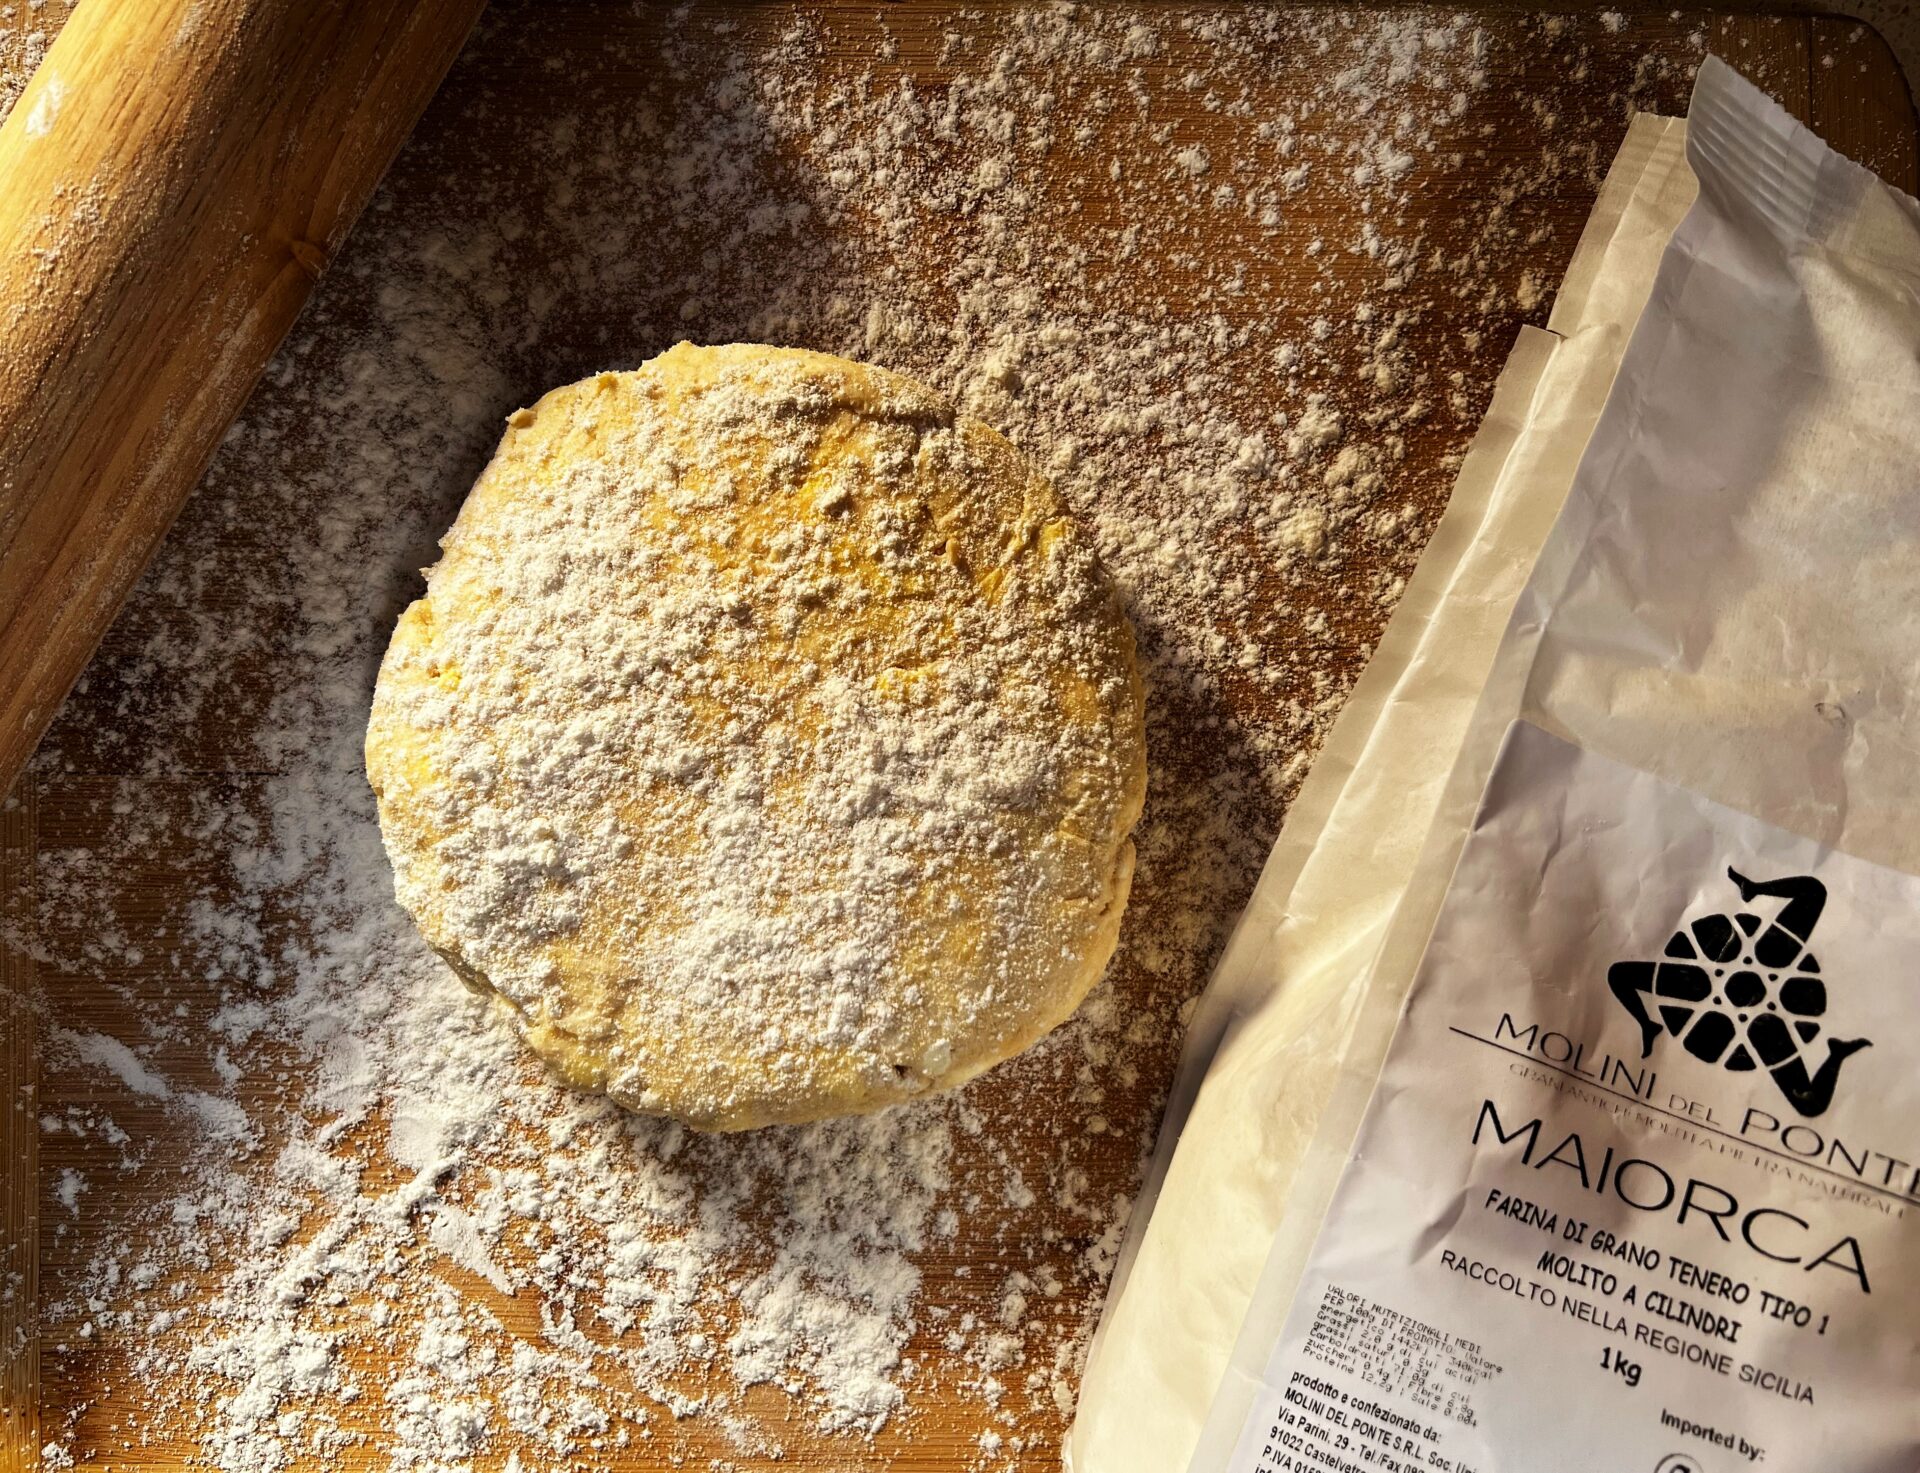 Maiorca flour pastry crust molini del ponte drago